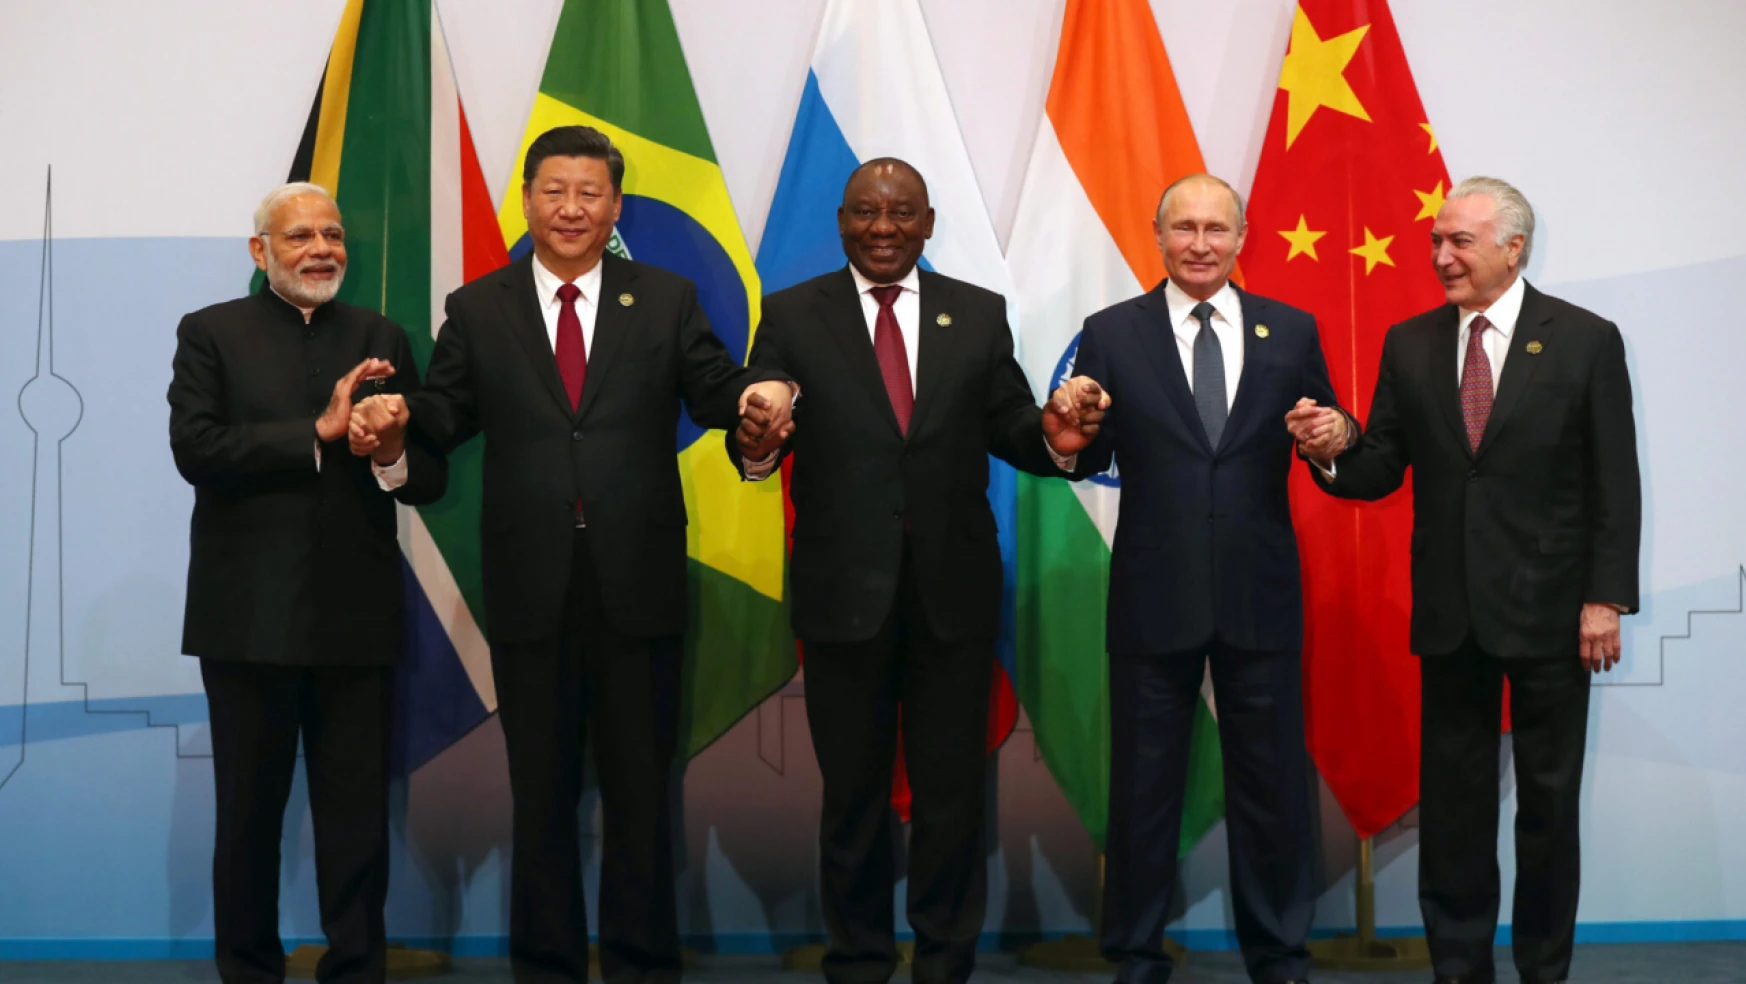 23 ülke resmen BRICS'e katılma isteğini bildirdi